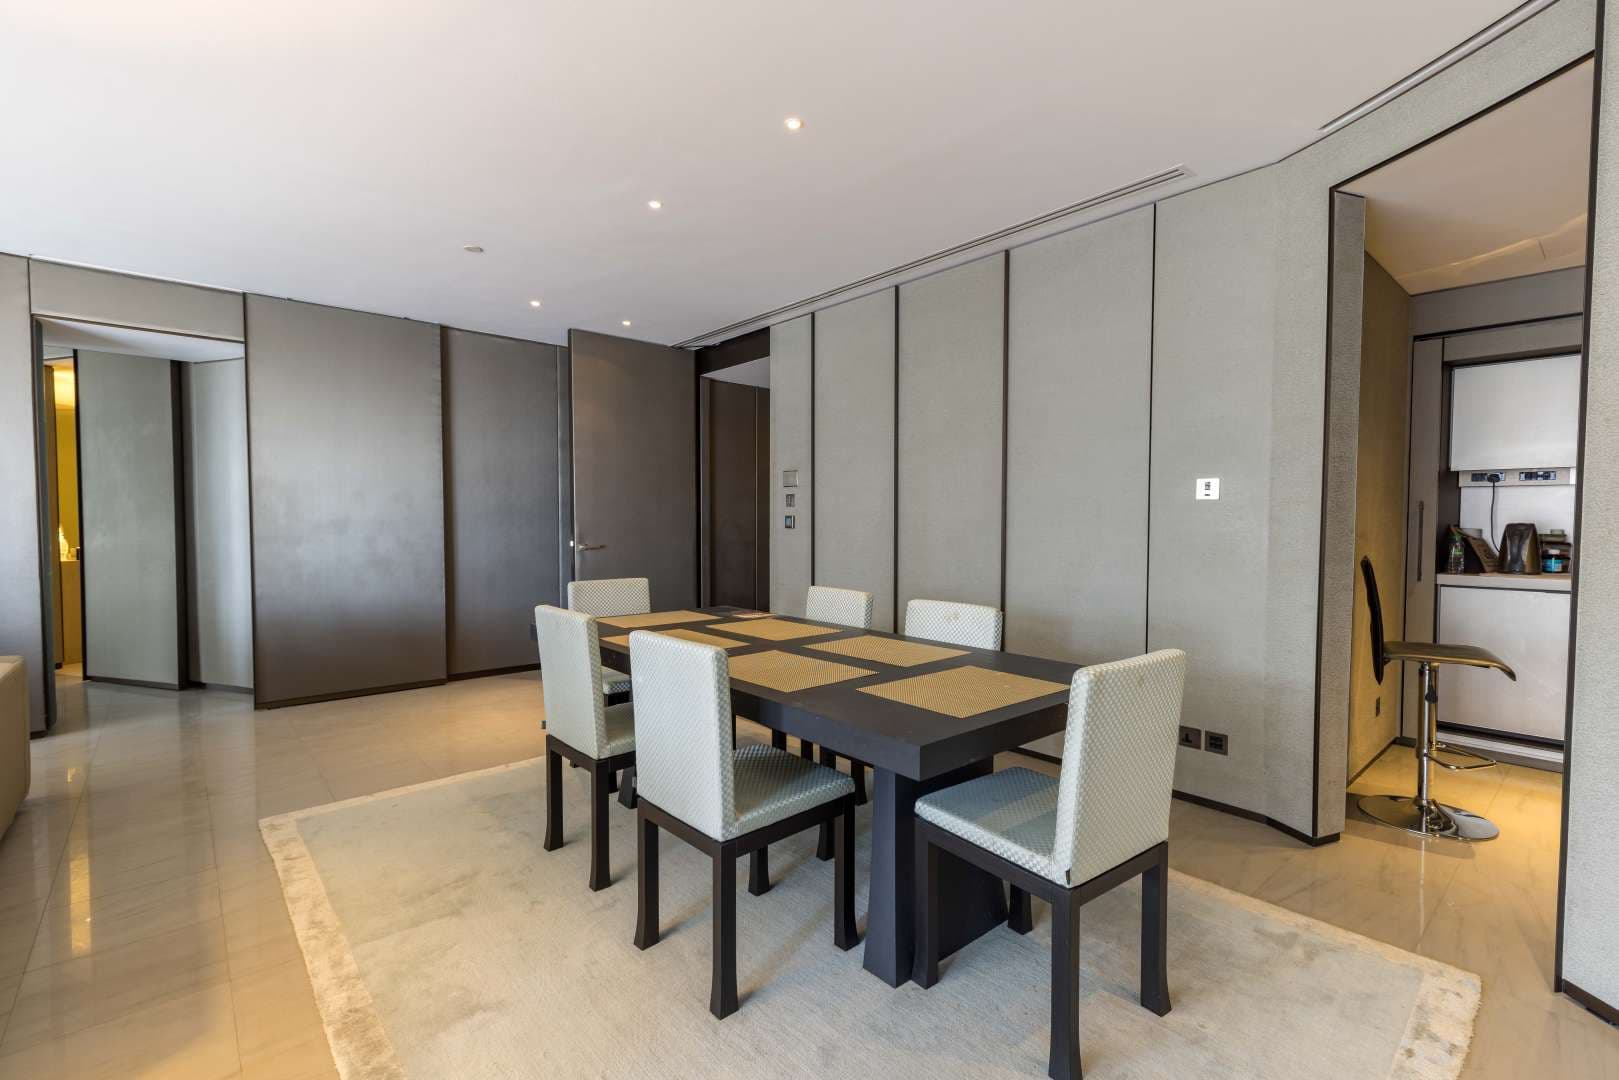 2 Bedroom Apartment For Rent Burj Khalifa Area Lp11434 27adfd6712705a0.jpg